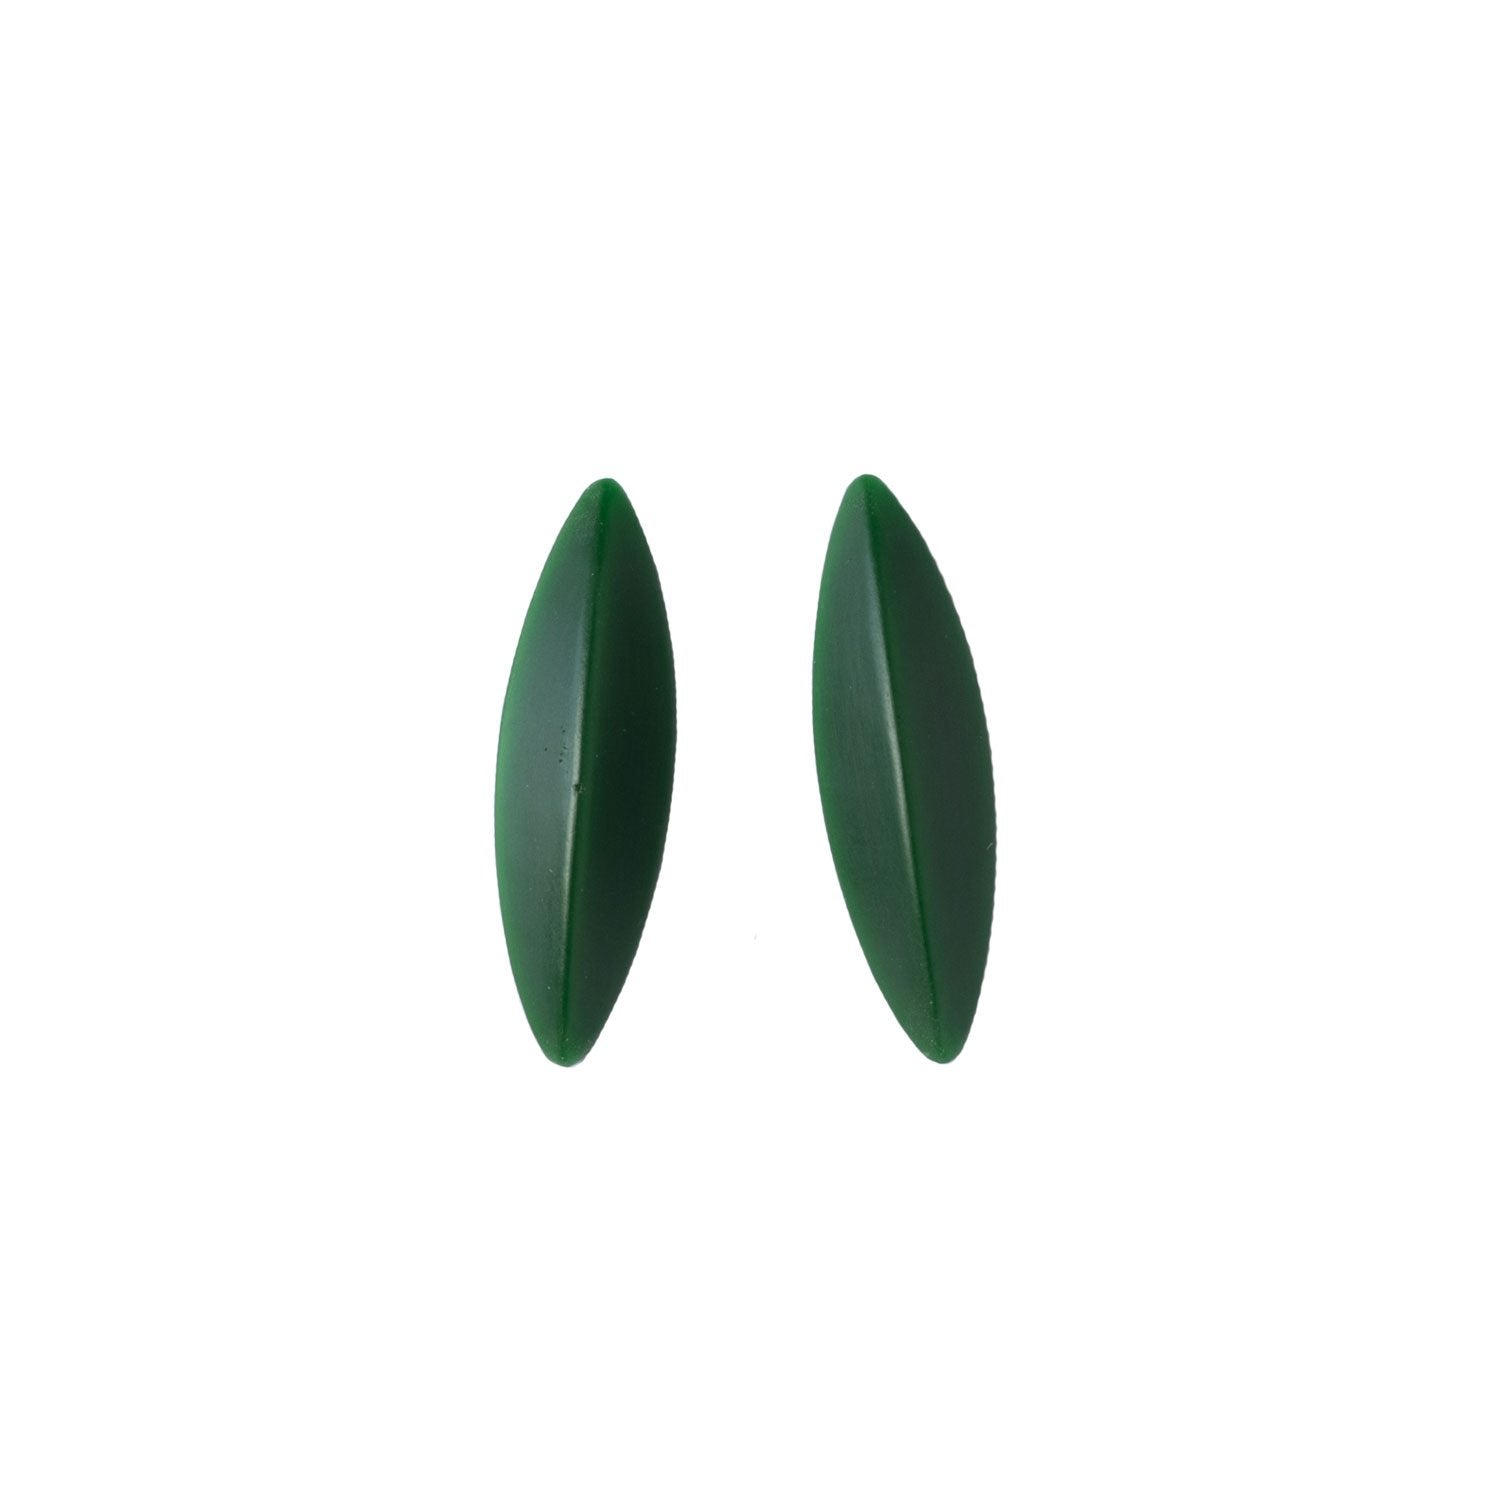 LEAVES earrings, dark green